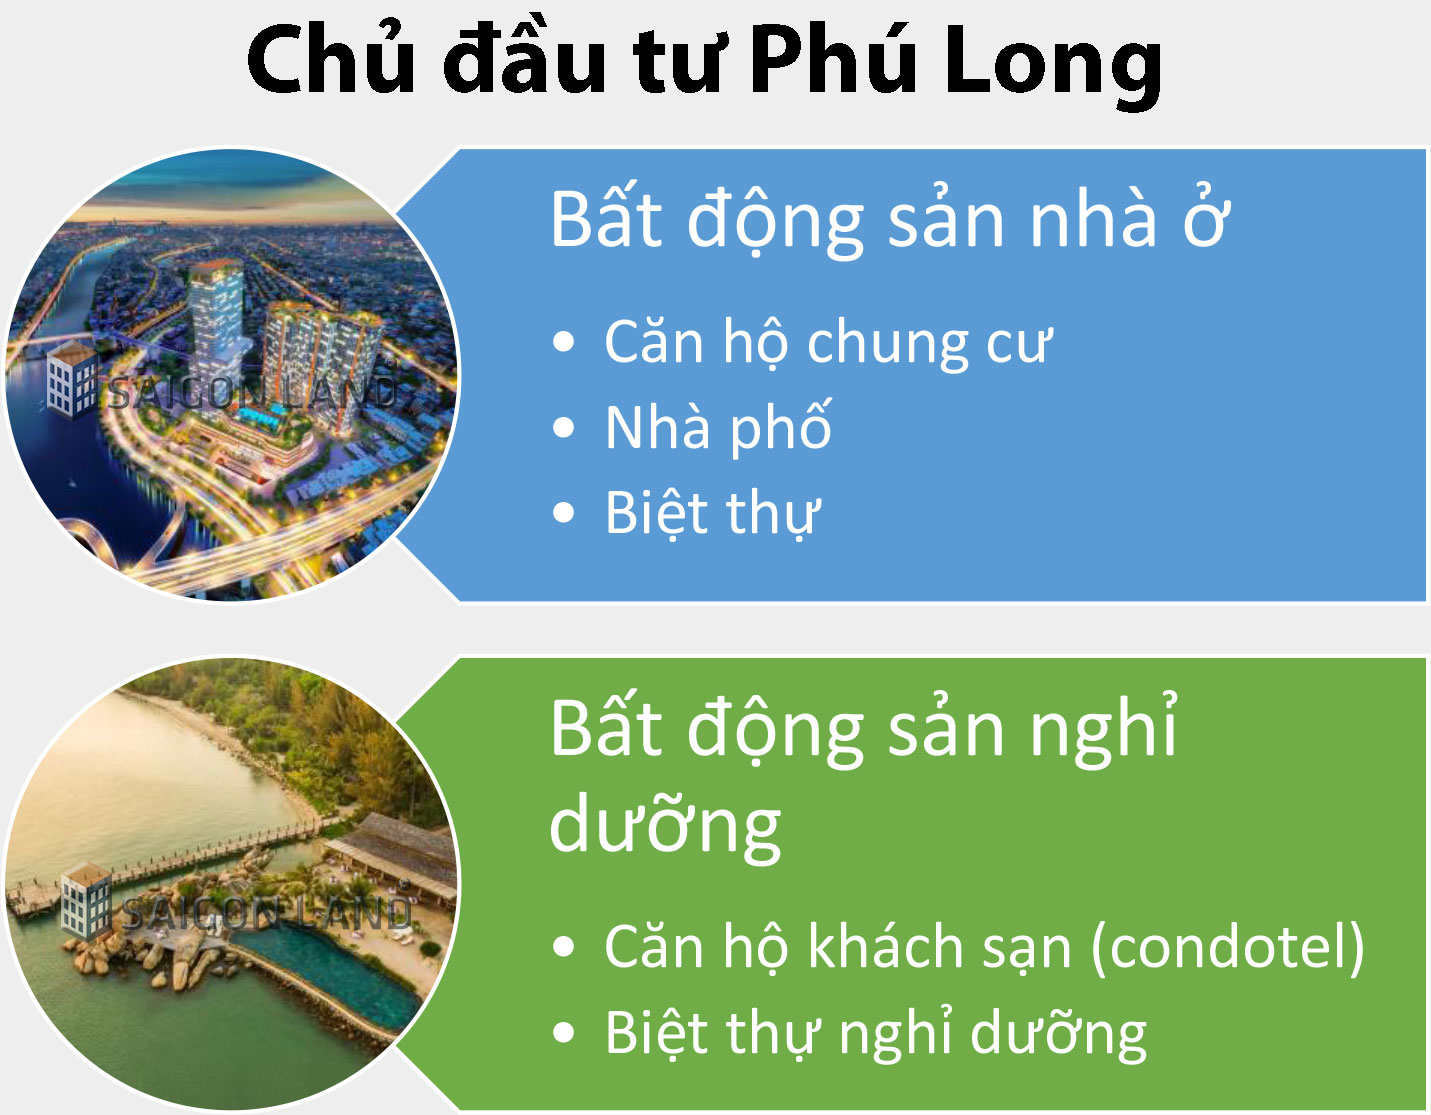 Các loại hình bất động sản do chủ đầu tư Phú Long phát triển